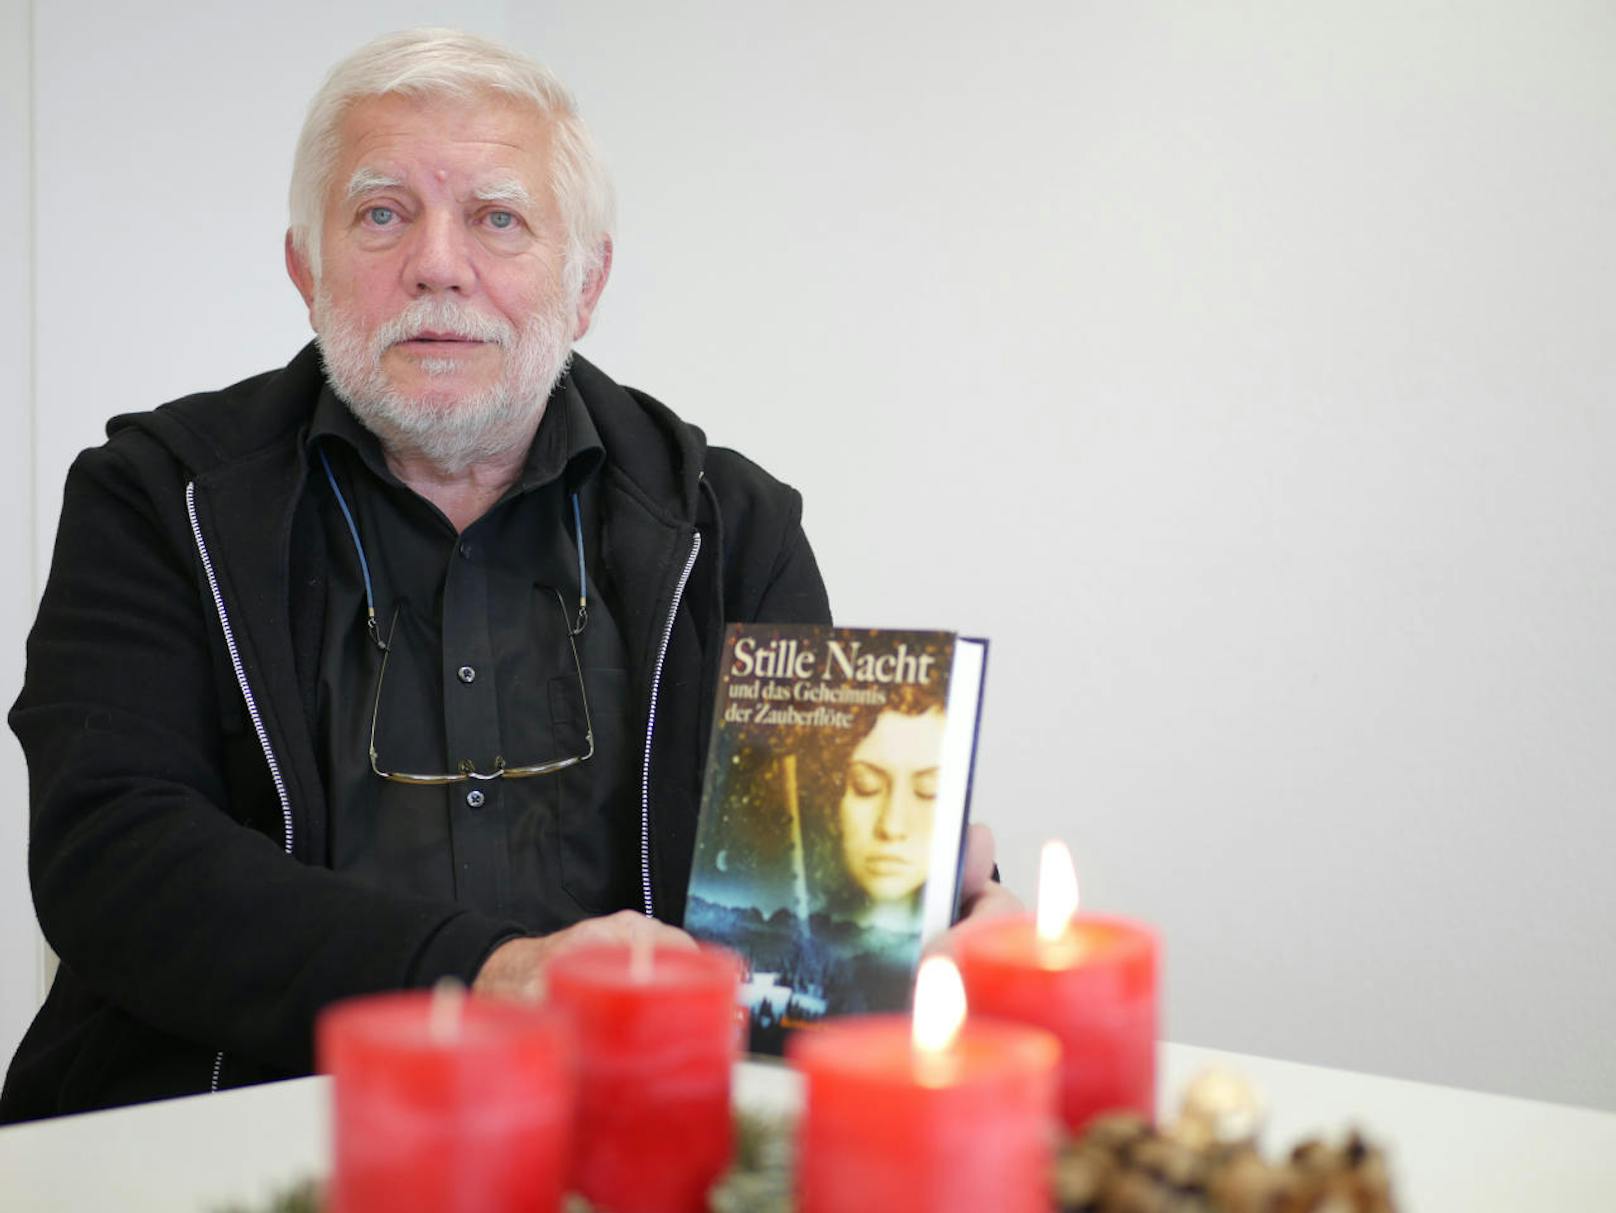 Reinhard Schwabenitzky stellt sein erstes Buch "Stille Nacht und das Geheimnis der Zauberflöte" vor.